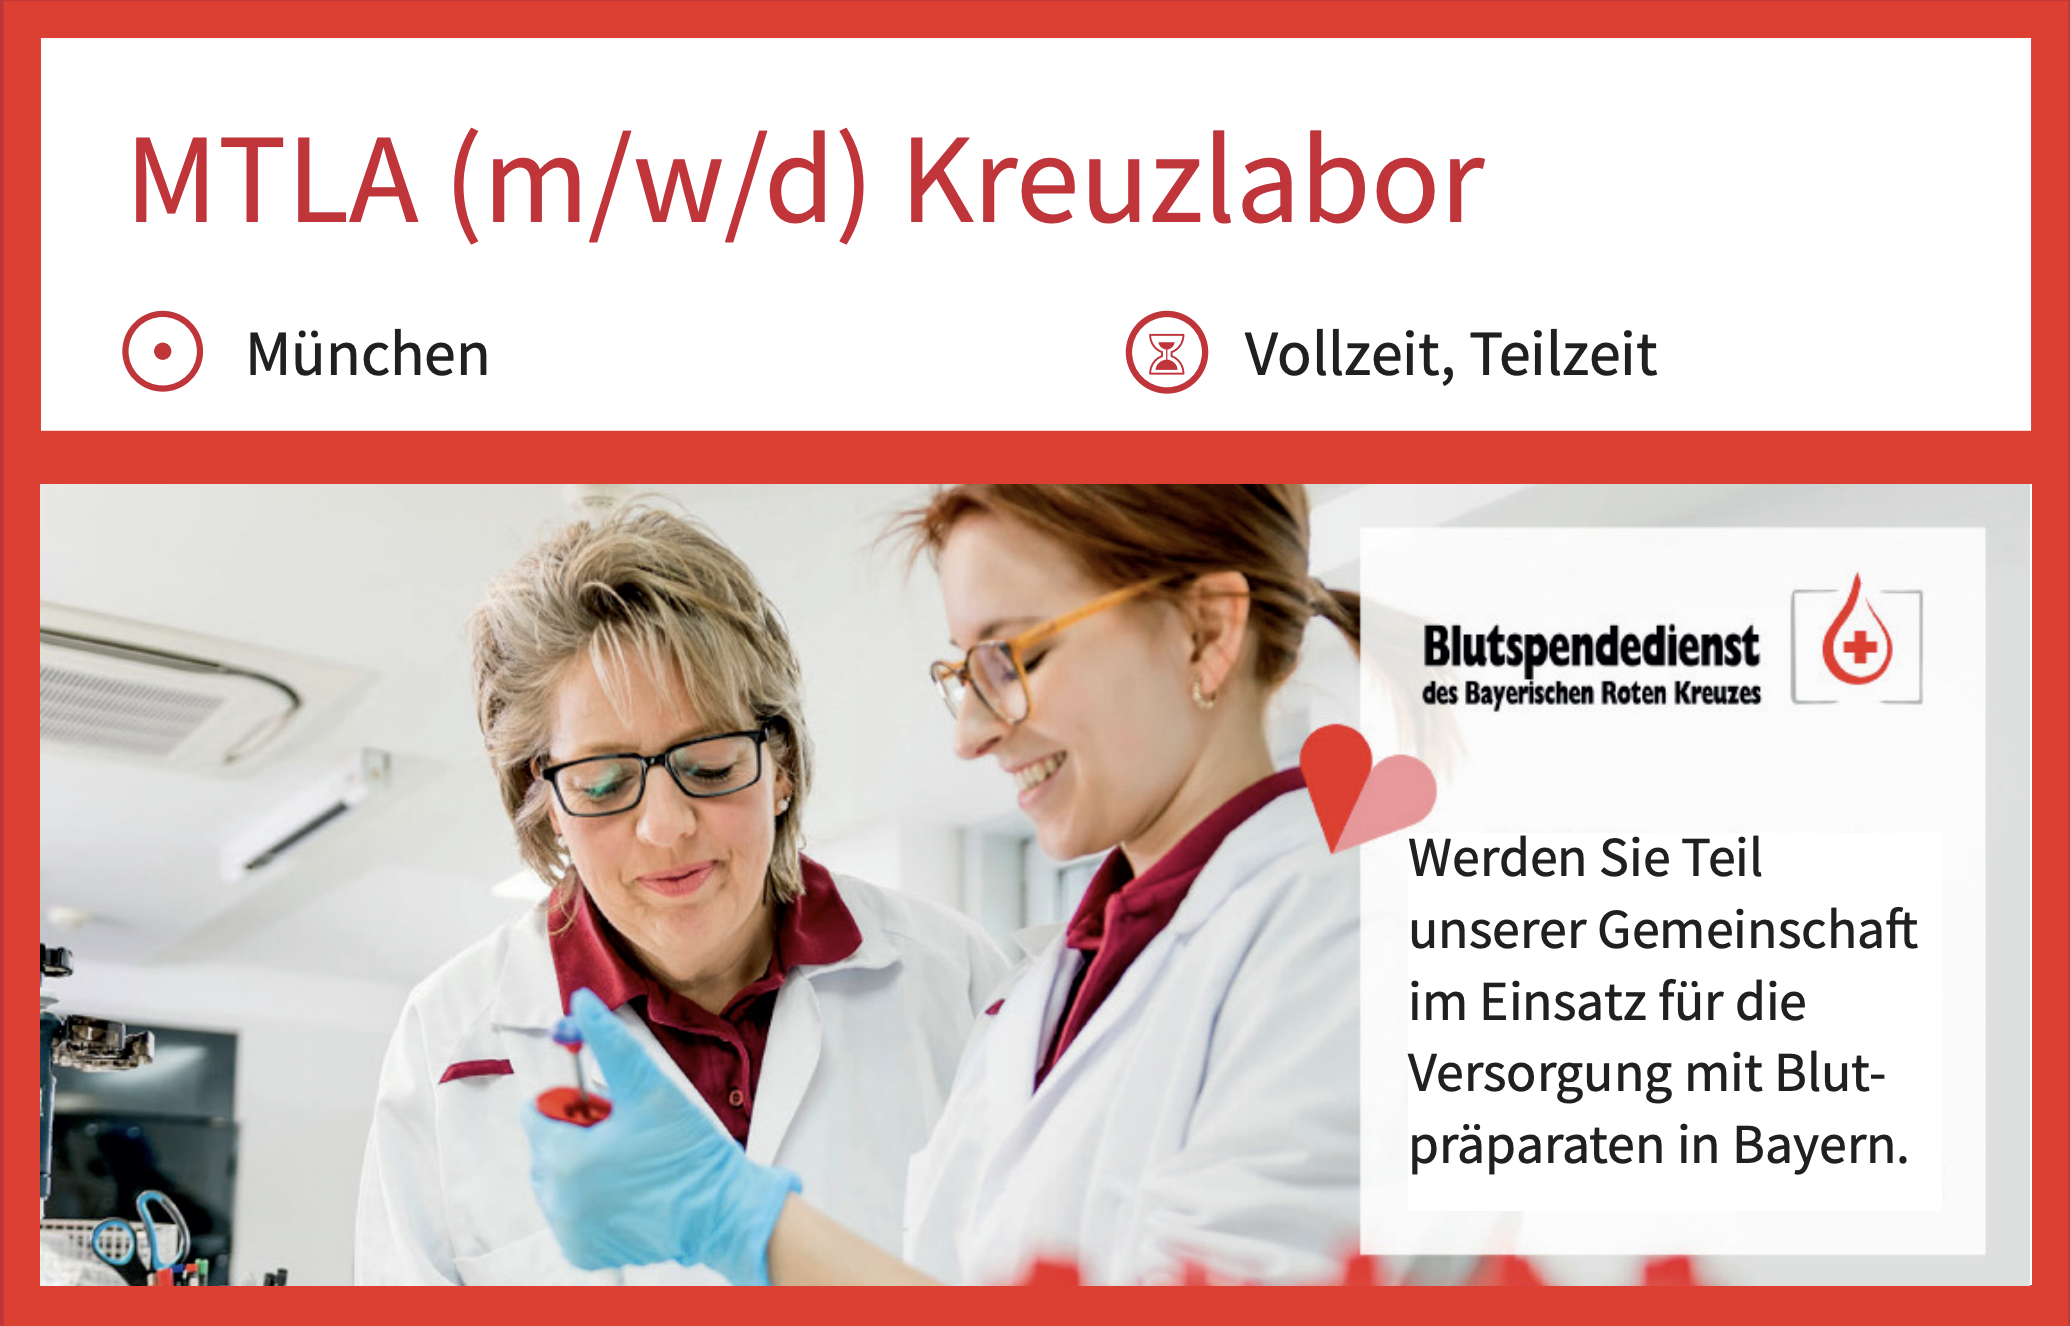 MTLA (m/w/d) Kreuzlabor München Vollzeit, Teilzeit Bluspendedienst   Werden Sie Teil
unserer Gemeinschaft
im Einsatz für die
Versorgung mit Blutpräparaten in Bayern.